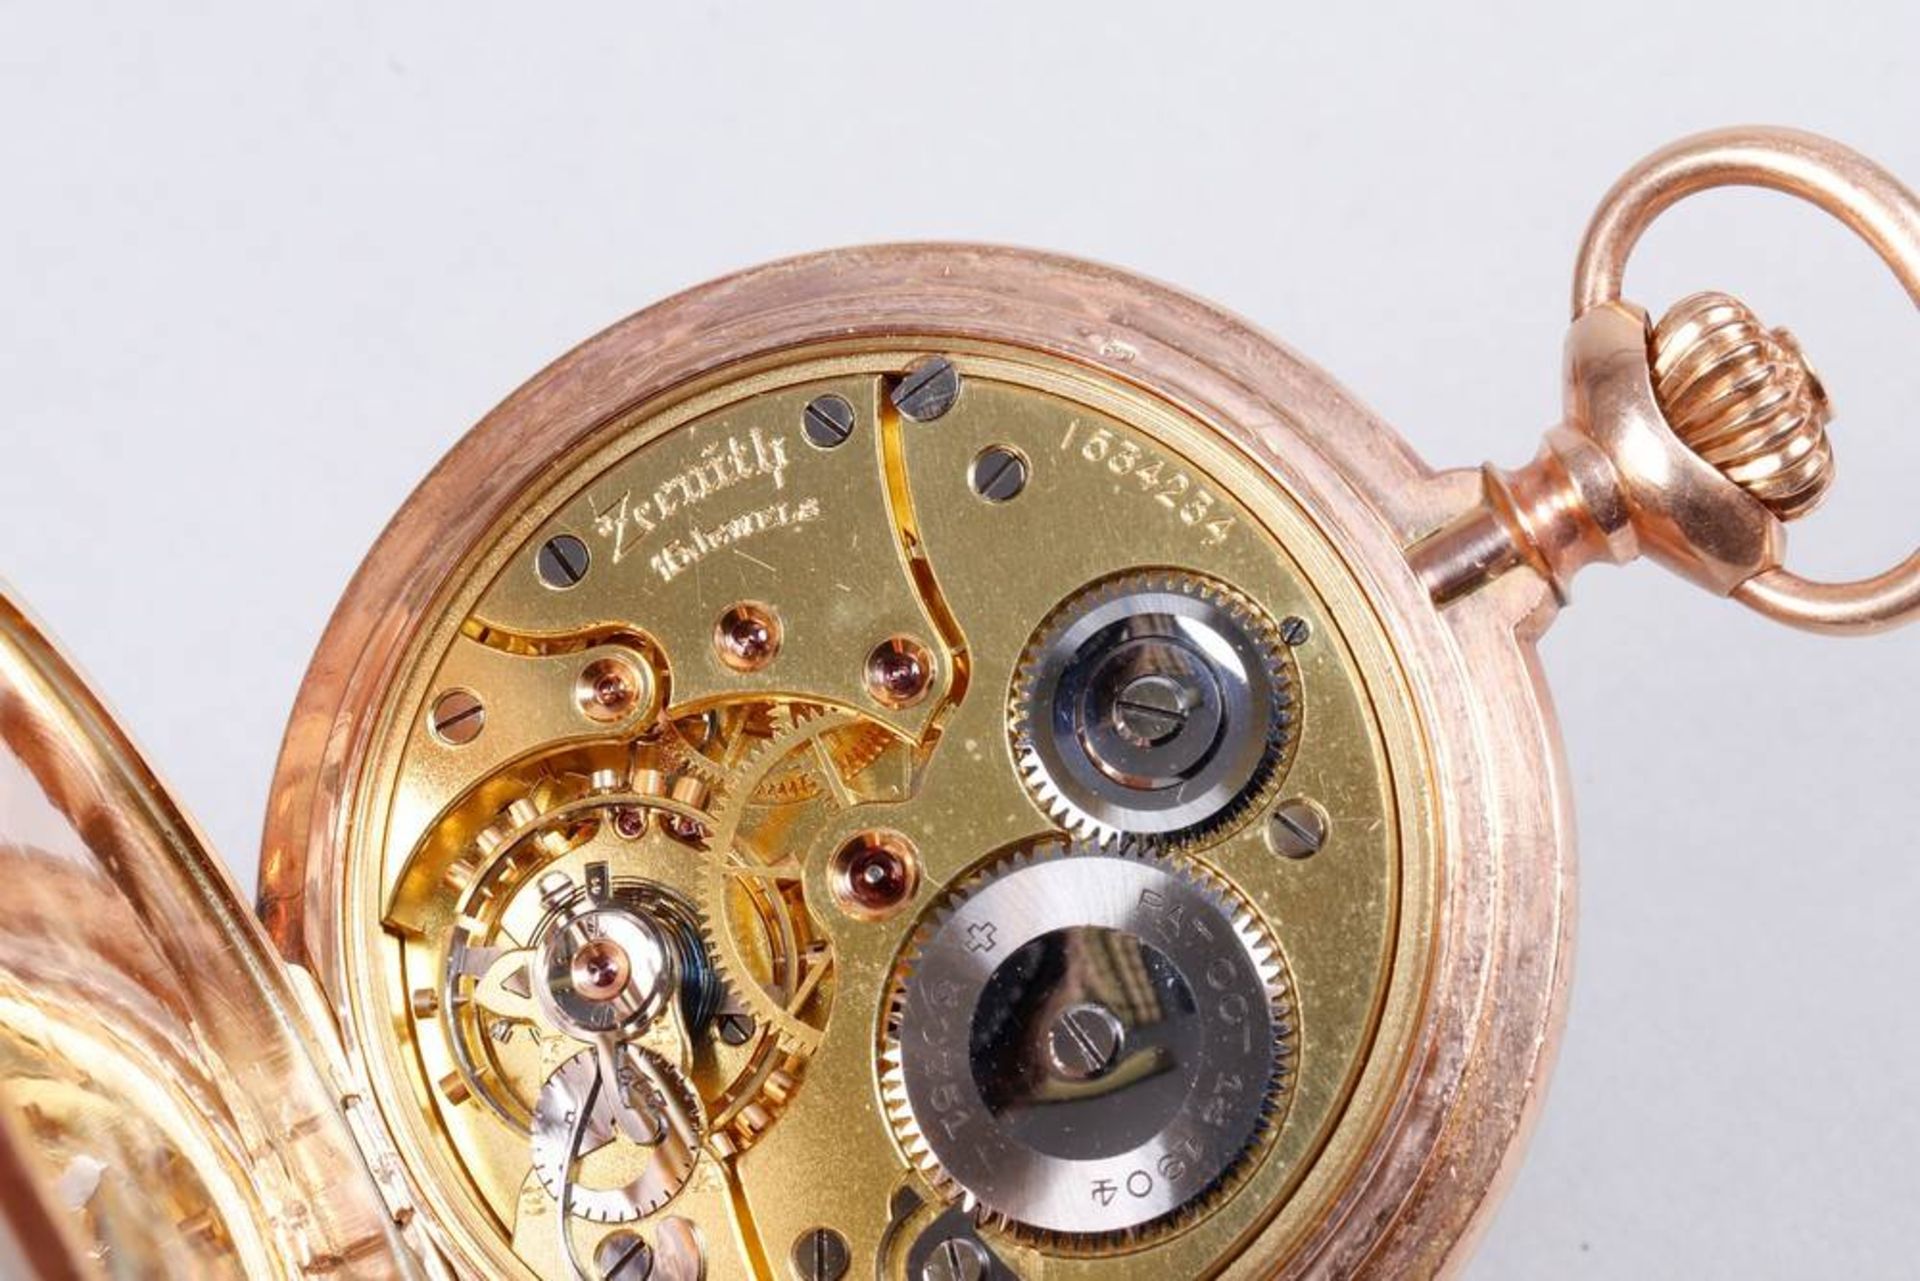 Zenith Savonette pocket watch, 585 gold - Image 6 of 7